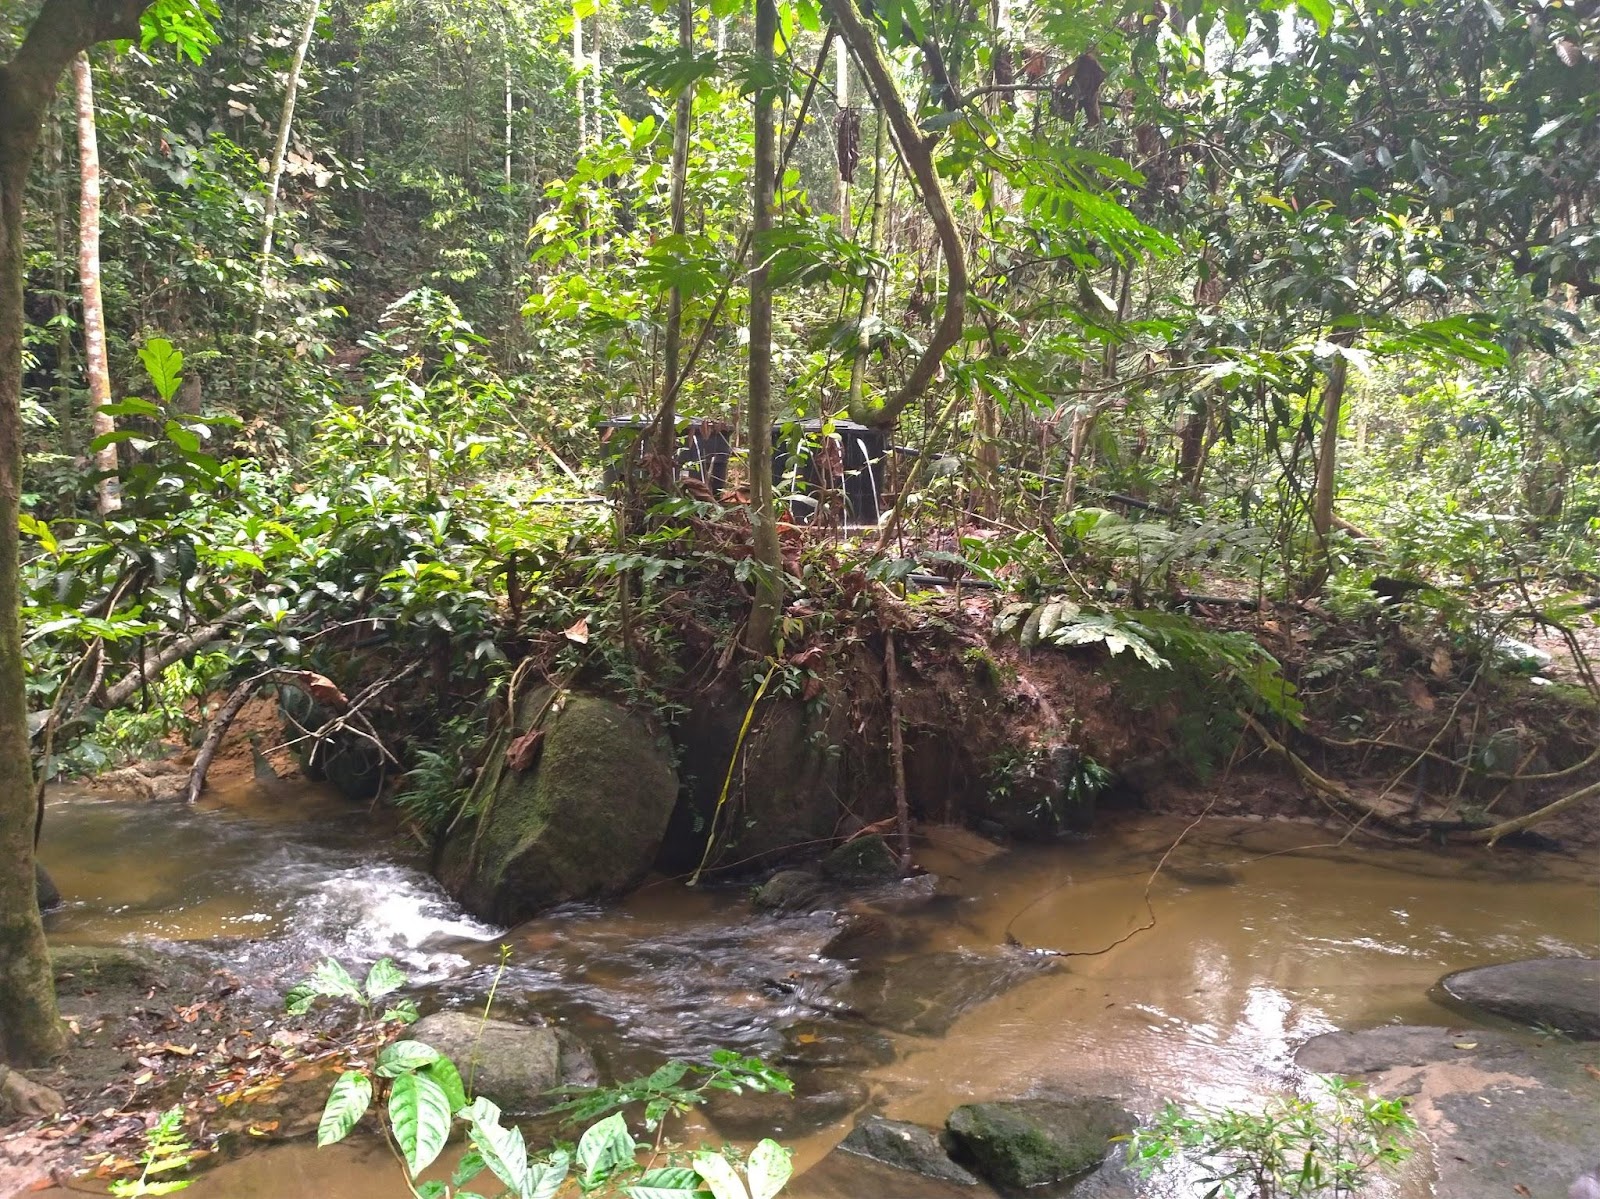 馬來西亞 自行車 腳踏車 行程 旅行 心得 吉隆坡 Sungai Tekala Recreational Forest